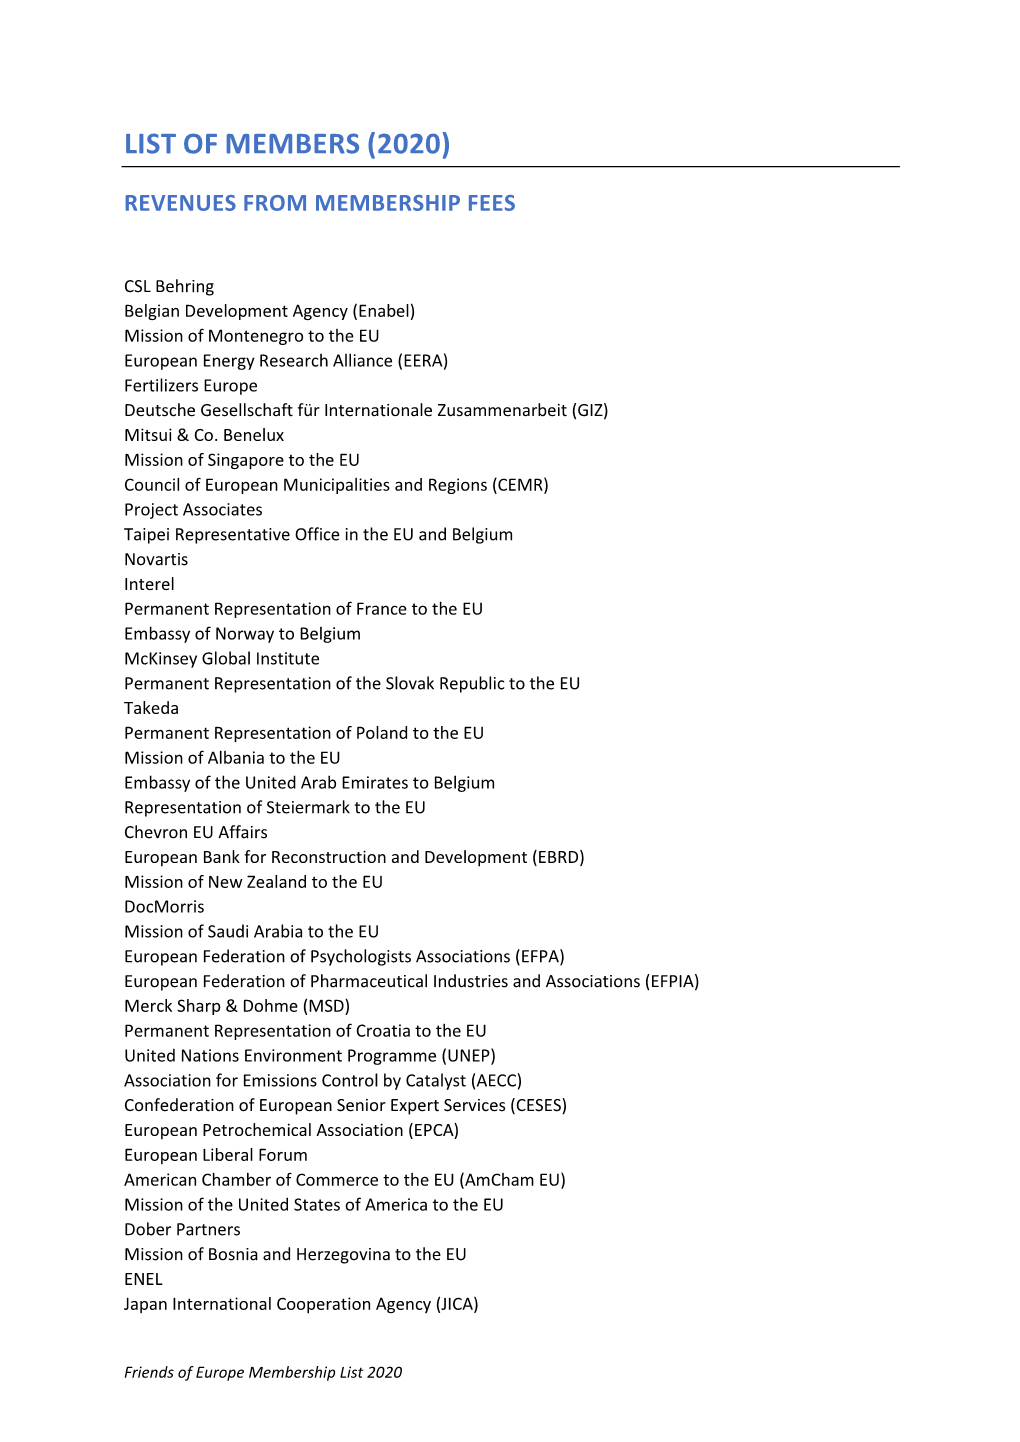 List of Members (2020)